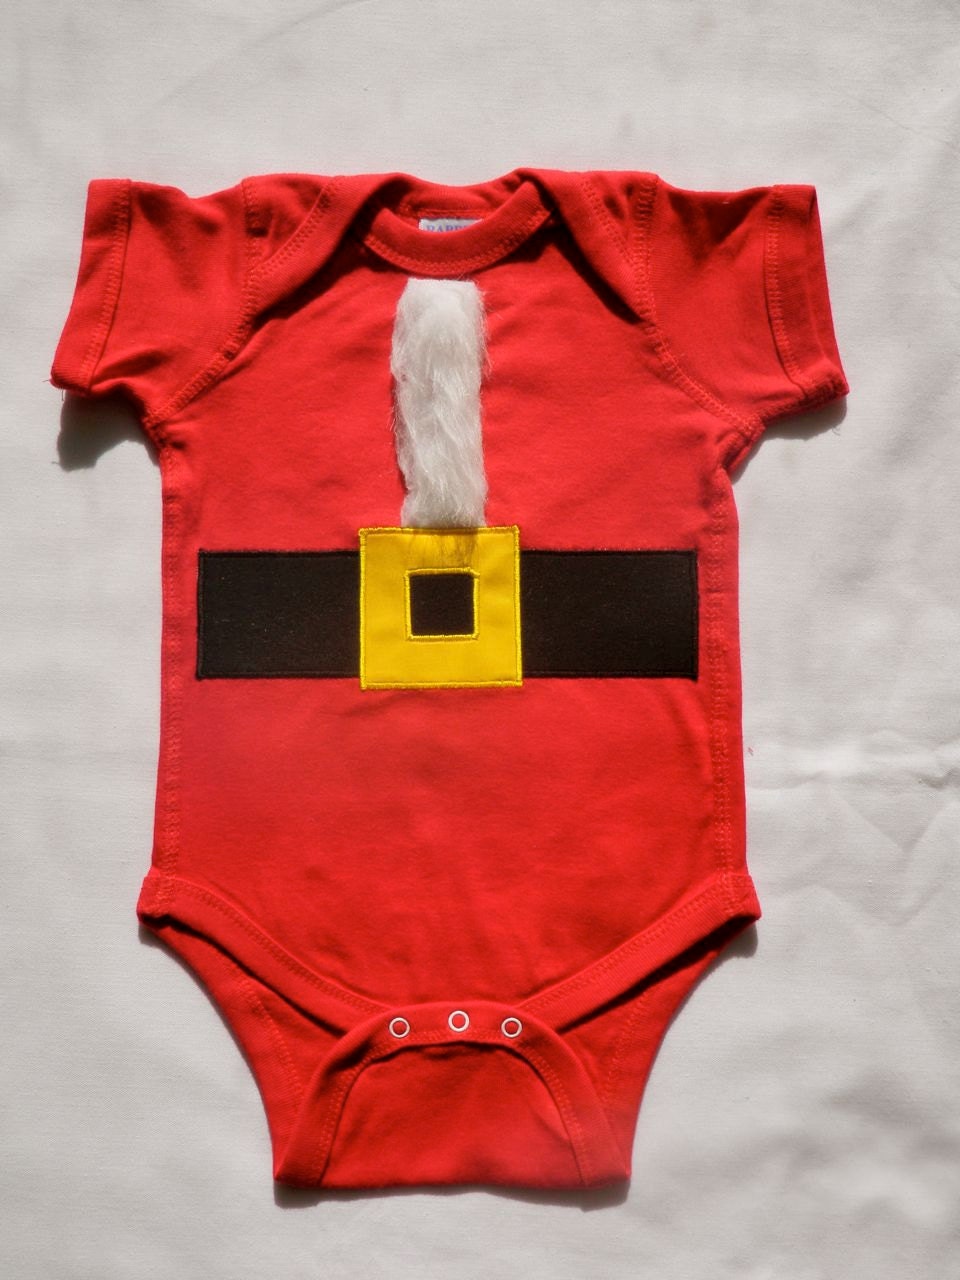 Ho Ho Ho Heiny Santa Christmas Infant 6M - OptionsAbound